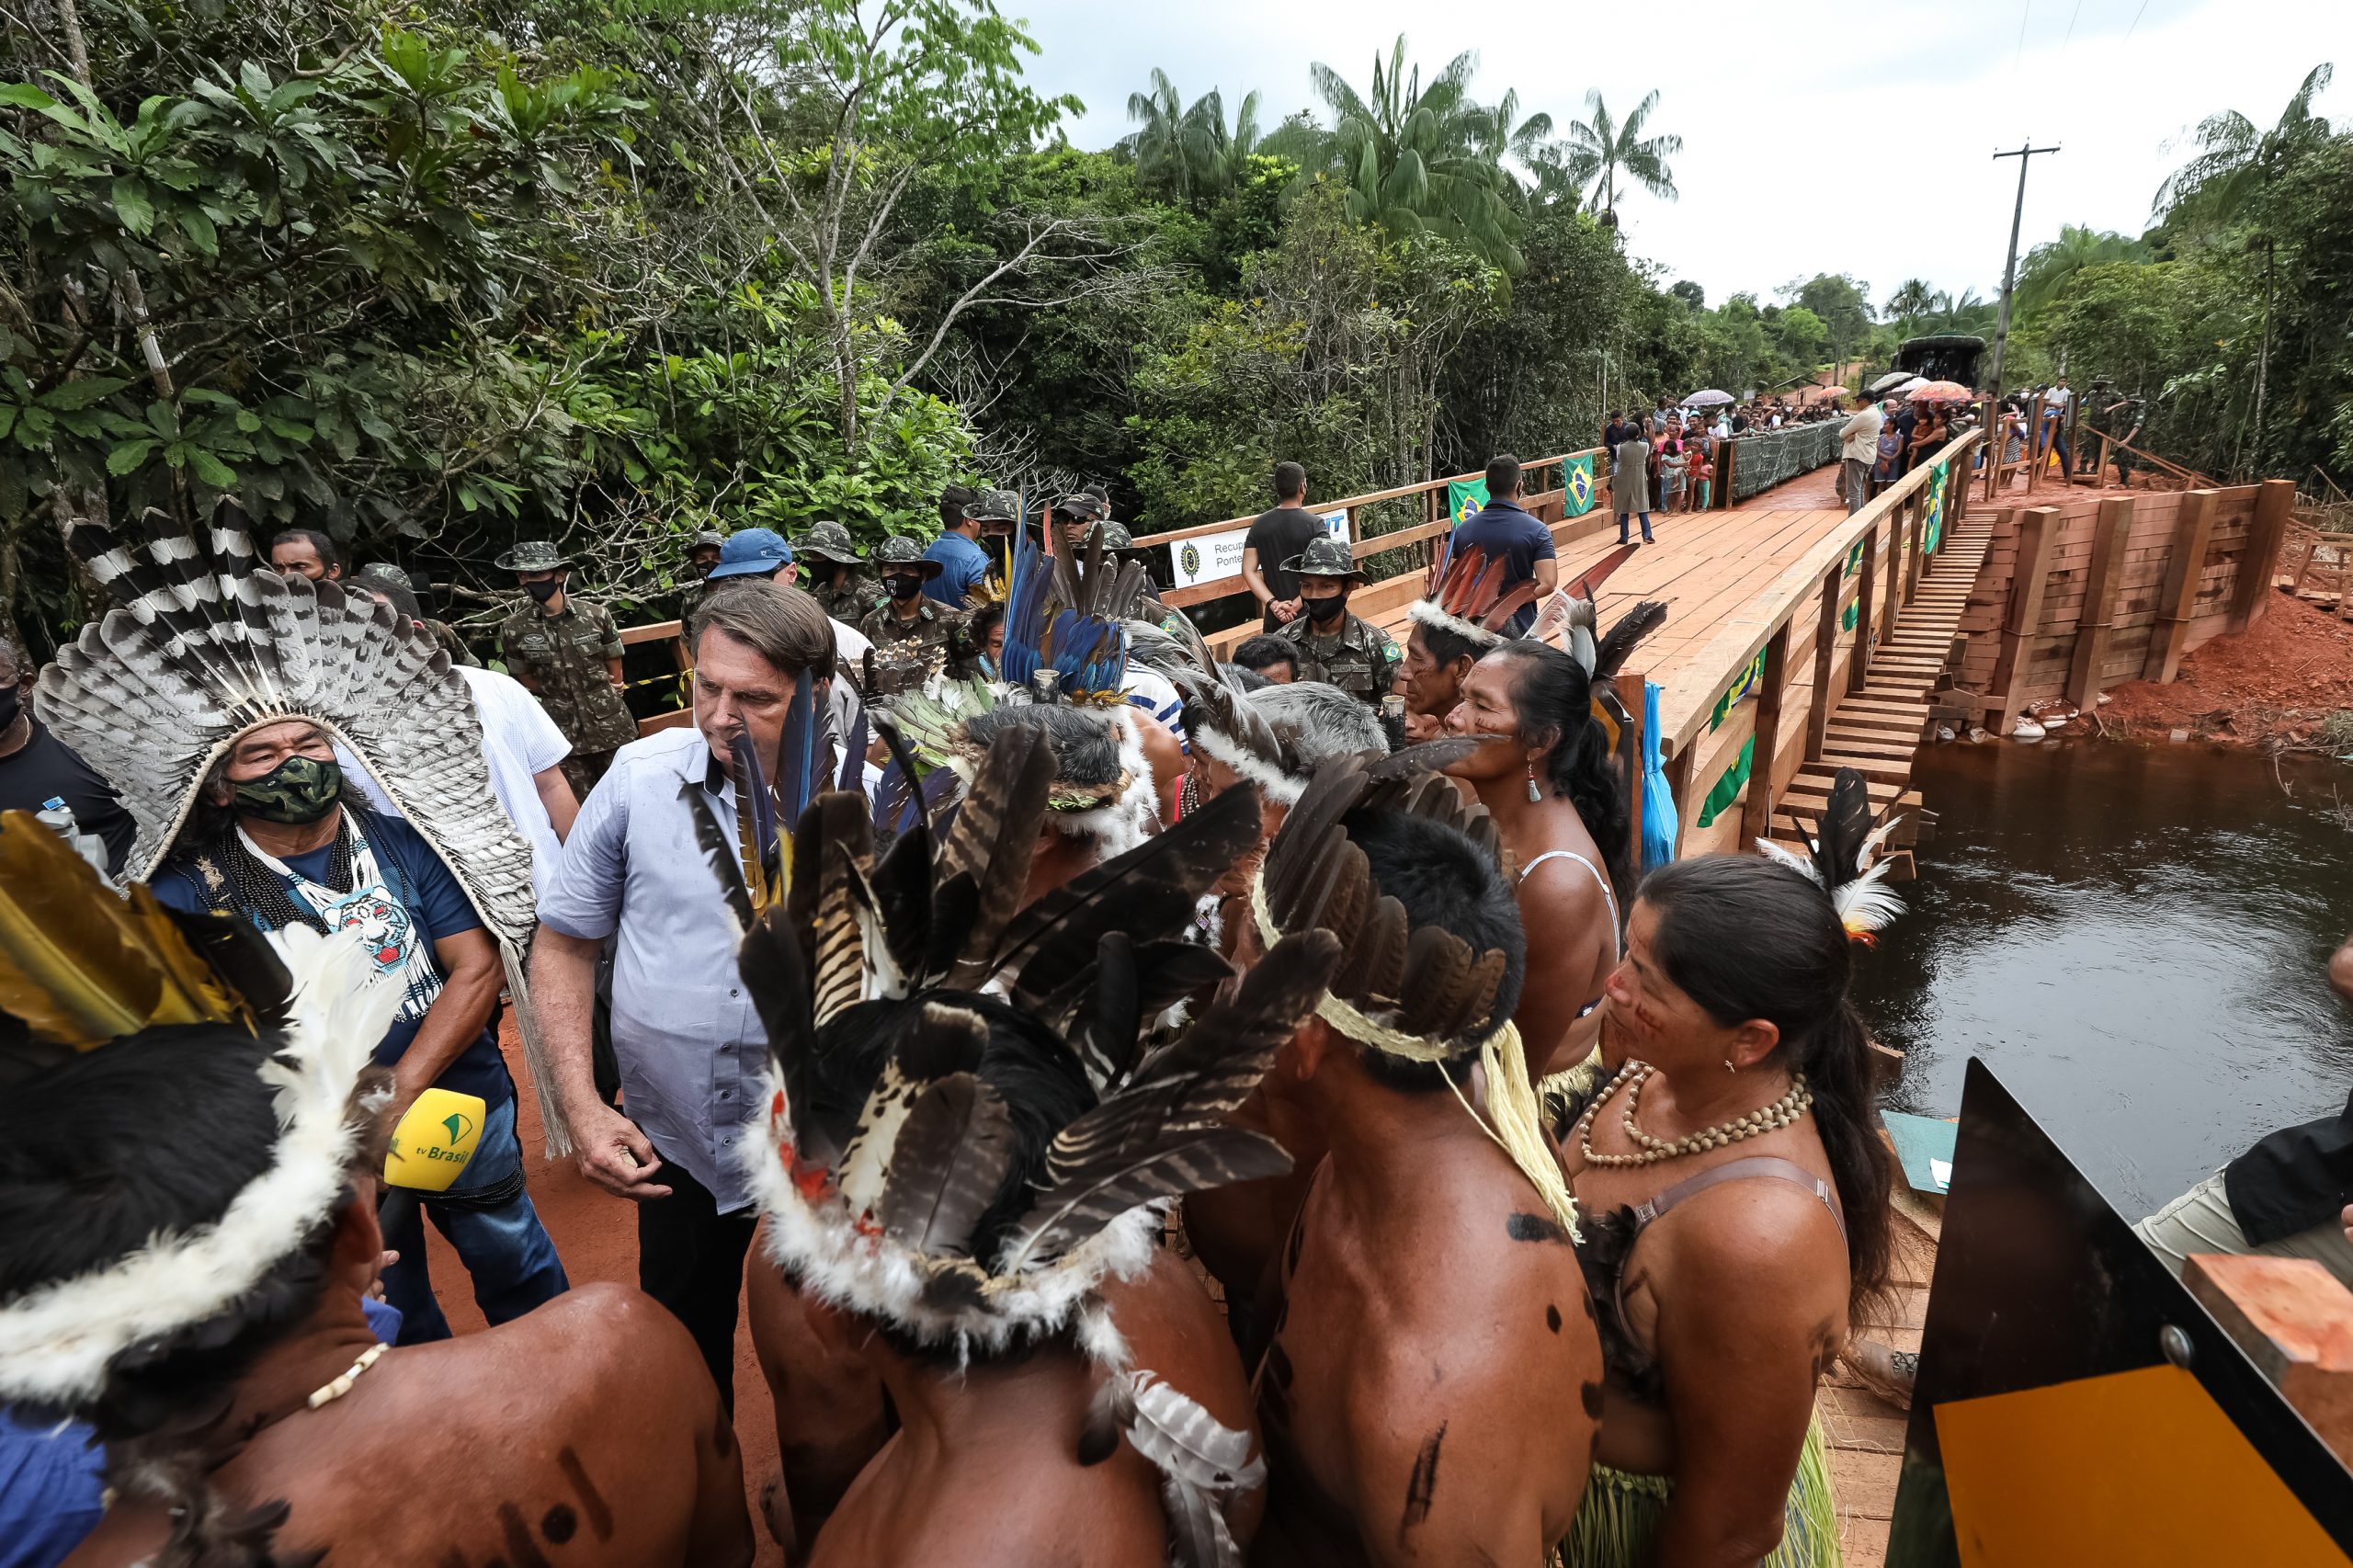 Sob clima de festa, indígenas recebem Bolsonaro com euforia e muitas fotos 22